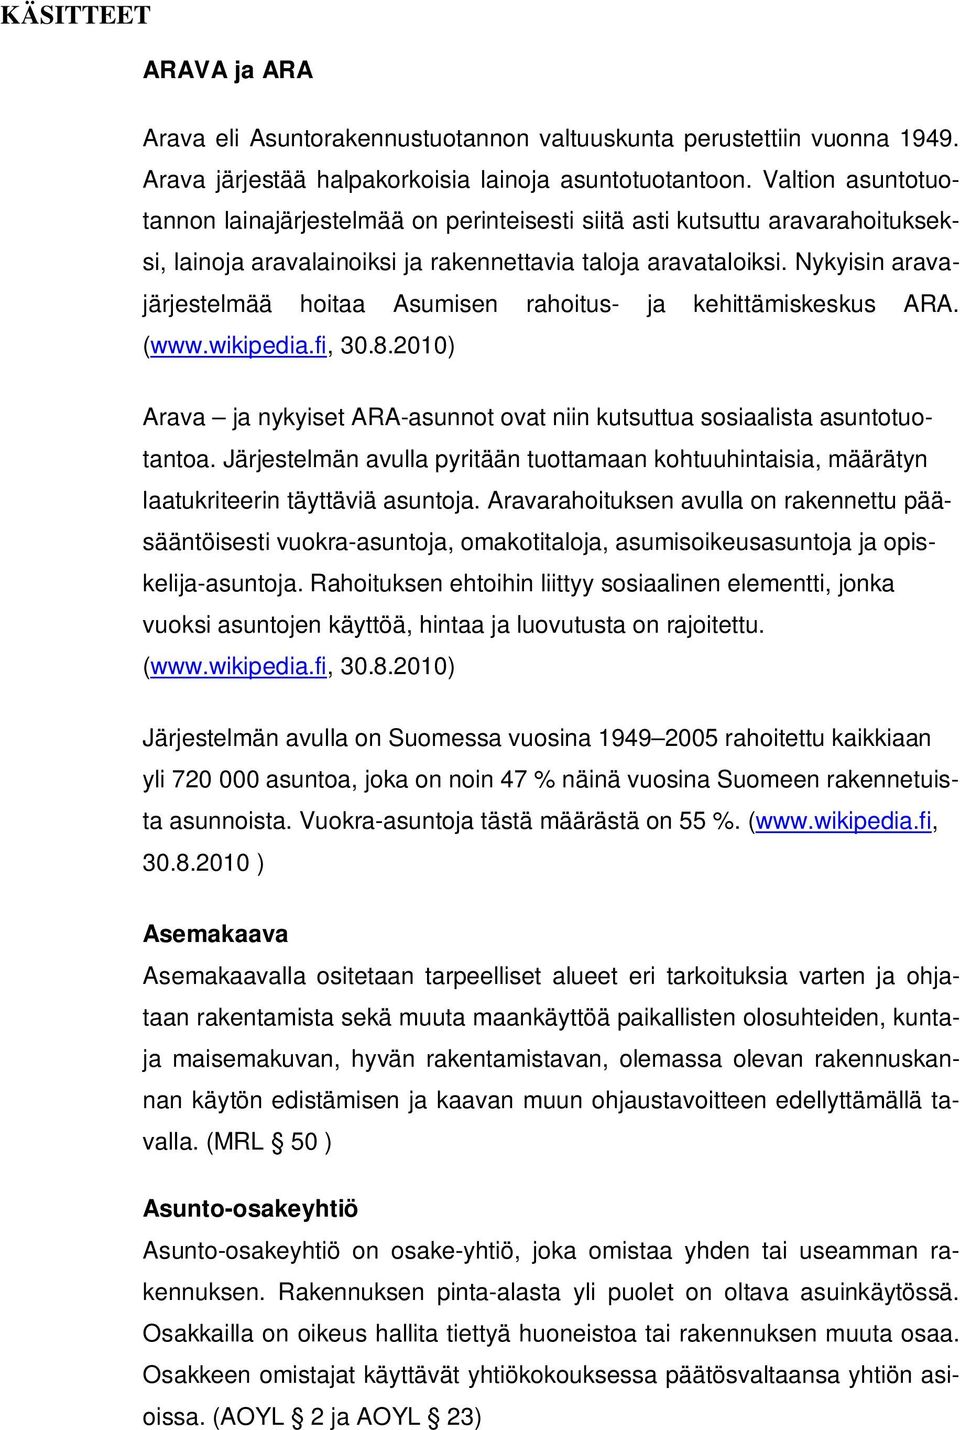 Nykyisin aravajärjestelmää hoitaa Asumisen rahoitus- ja kehittämiskeskus ARA. (www.wikipedia.fi, 30.8.2010) Arava ja nykyiset ARA-asunnot ovat niin kutsuttua sosiaalista asuntotuotantoa.